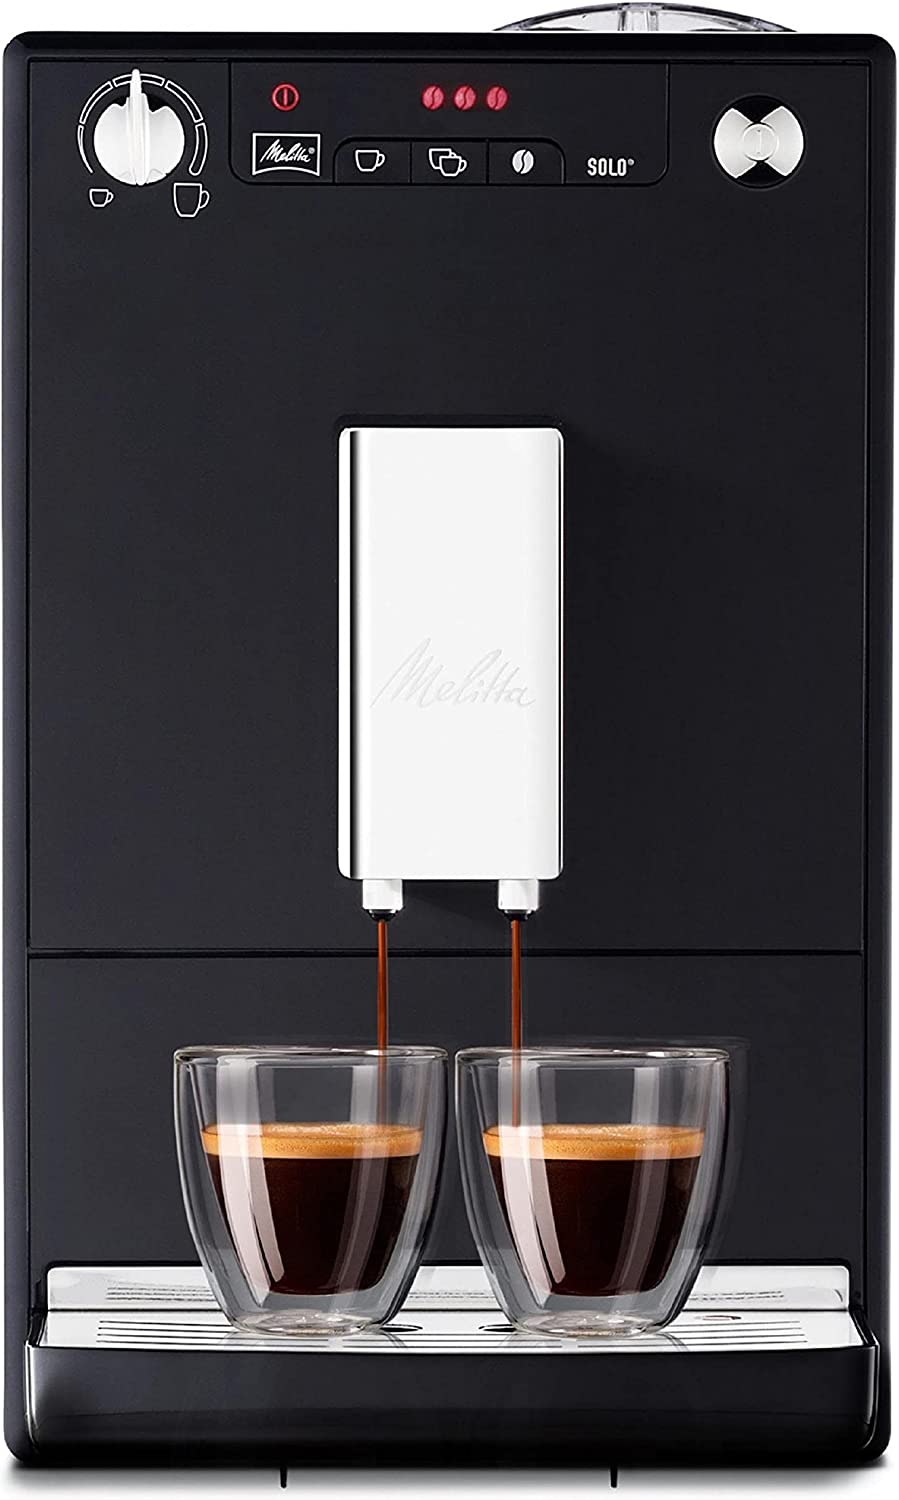 La machine à café automatique Melitta Caffeo Solo est à prix sacrifié sur Amazon !